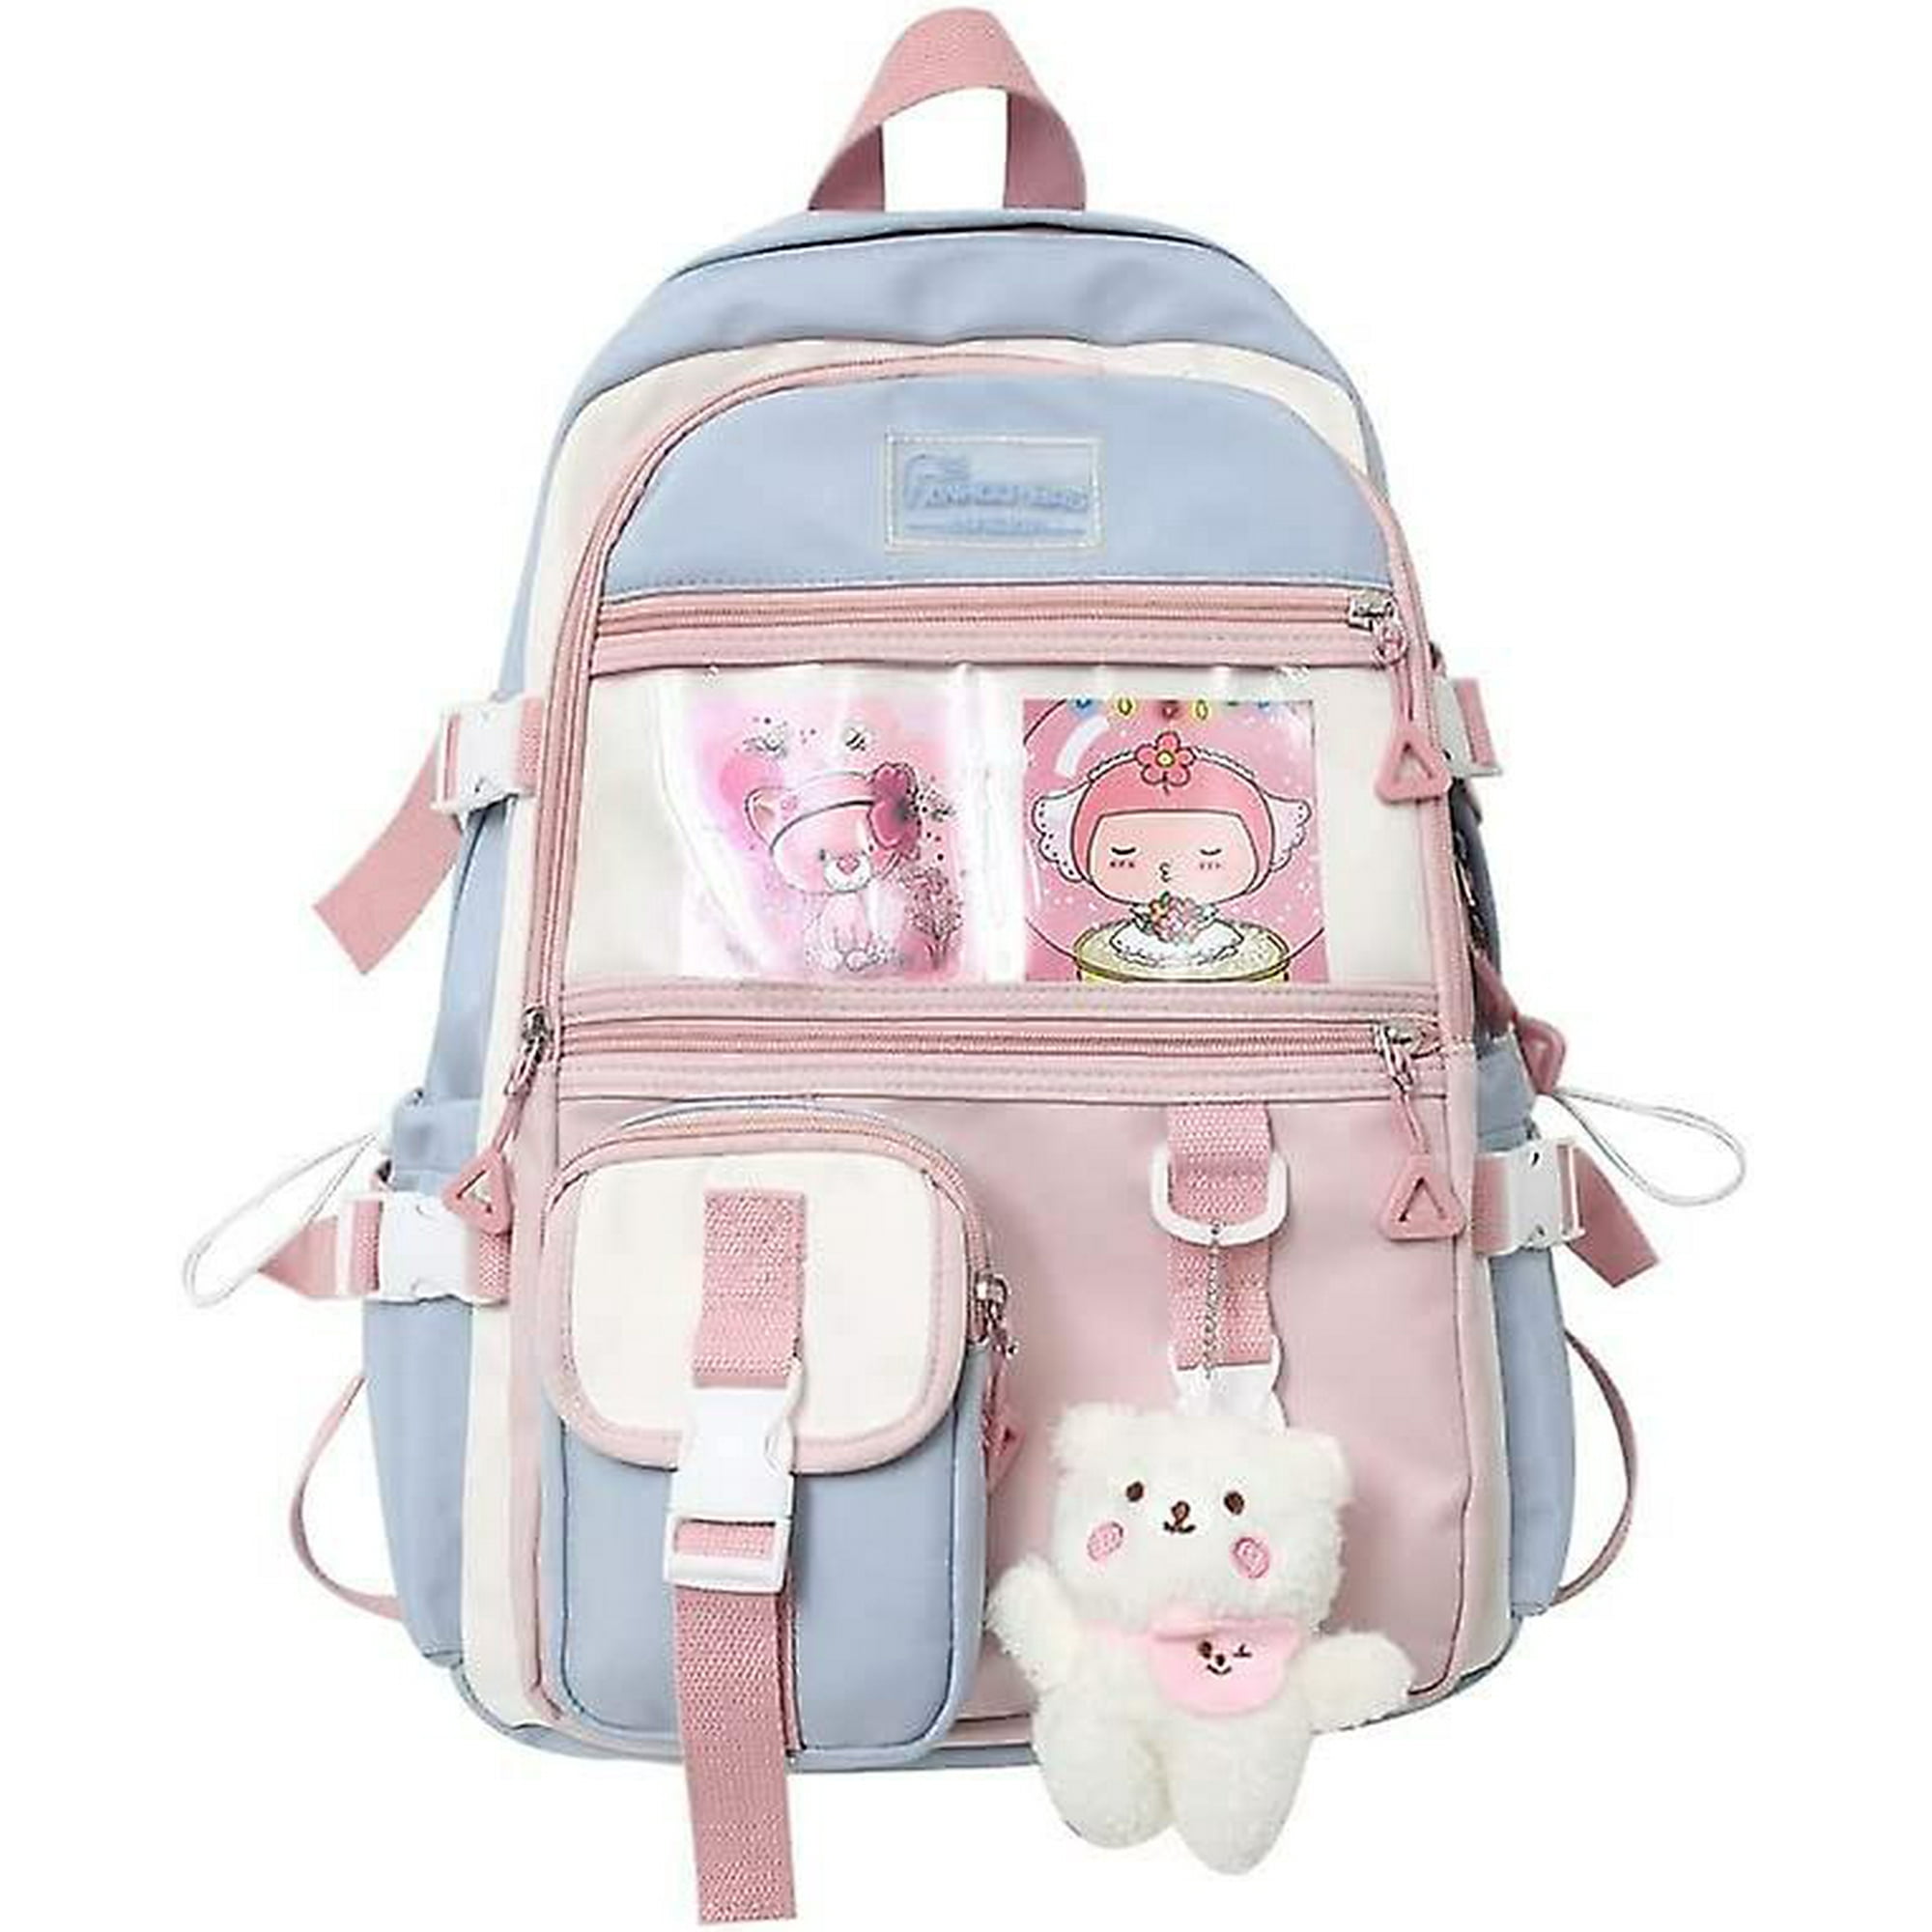 🍉•Cosas aesthetic para llevar en tu mochila a la escuela•🍉 